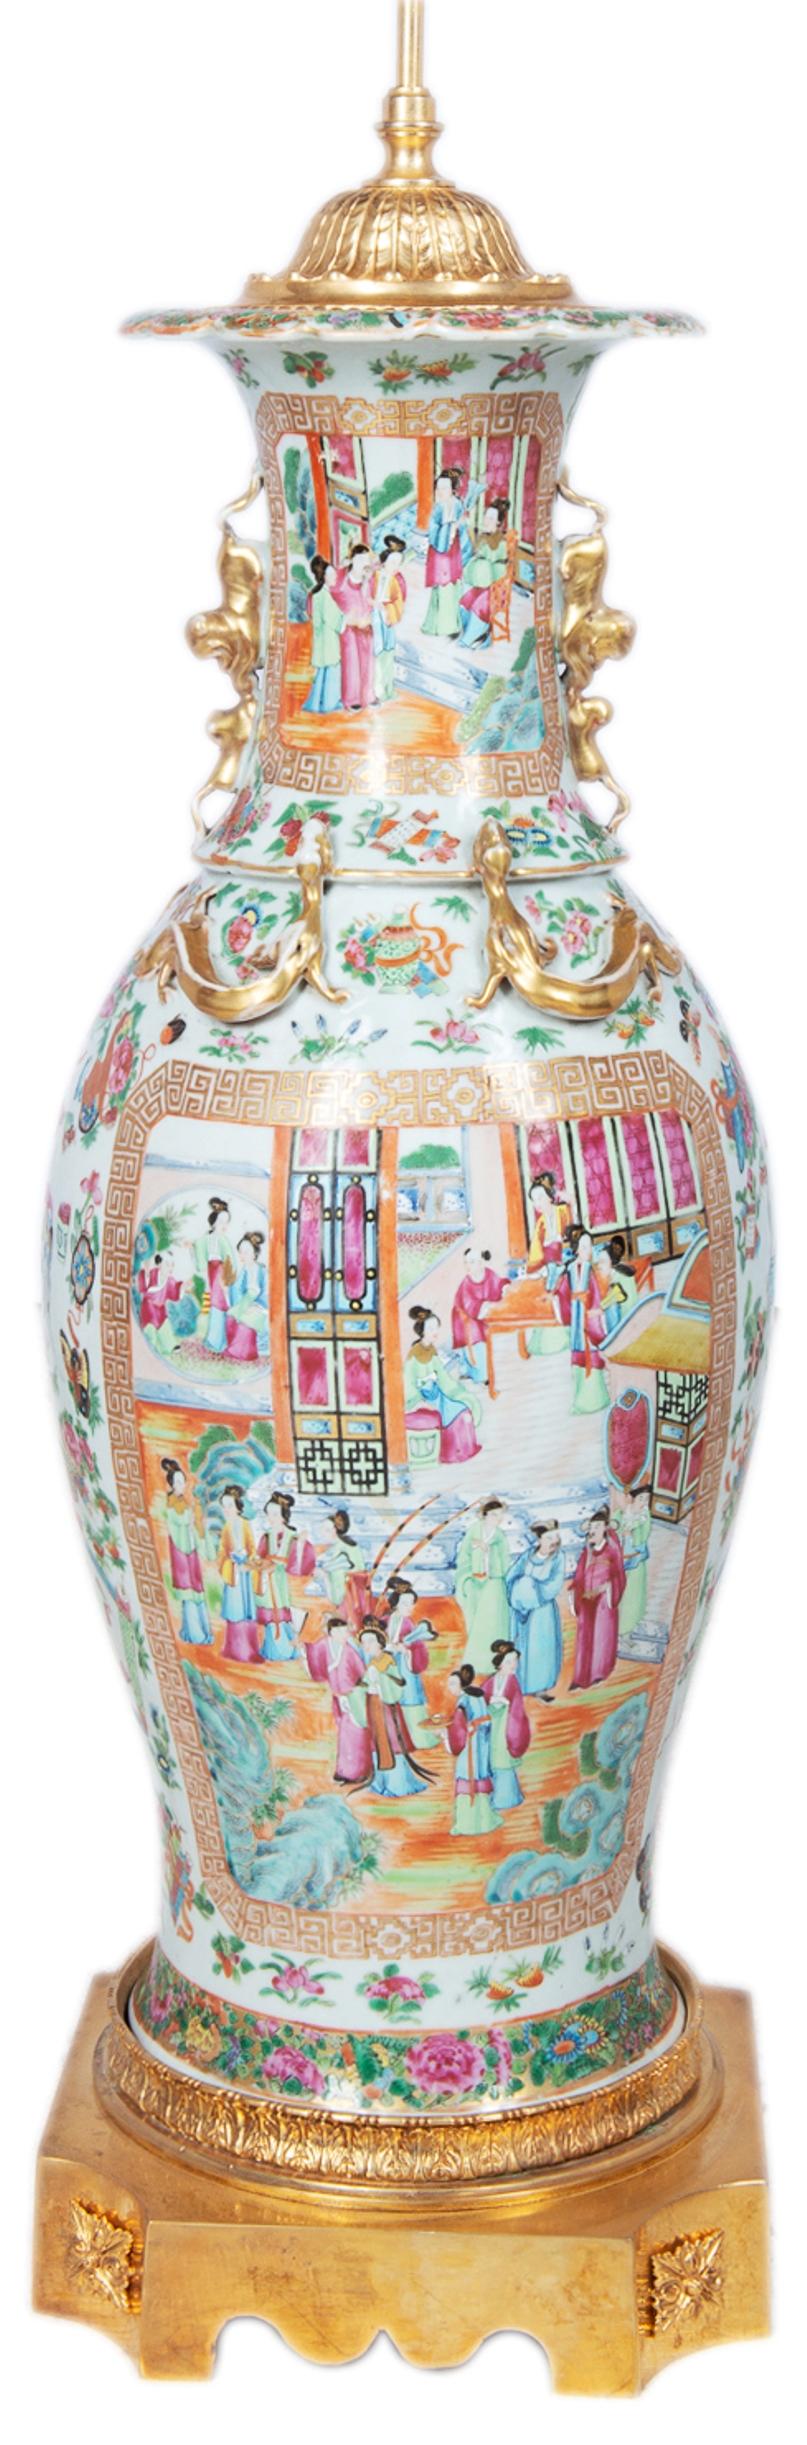 Eine gute Qualität späten 19. Jahrhundert Chinesisch Kantonesisch / Rose Medaillon Vase / Lampe. Mit vergoldetem Hund mit falschen Griffen und Schlangen, klassischer grüner Grunddekoration mit eingefügten gemalten Tafeln, die orientalische Innen-